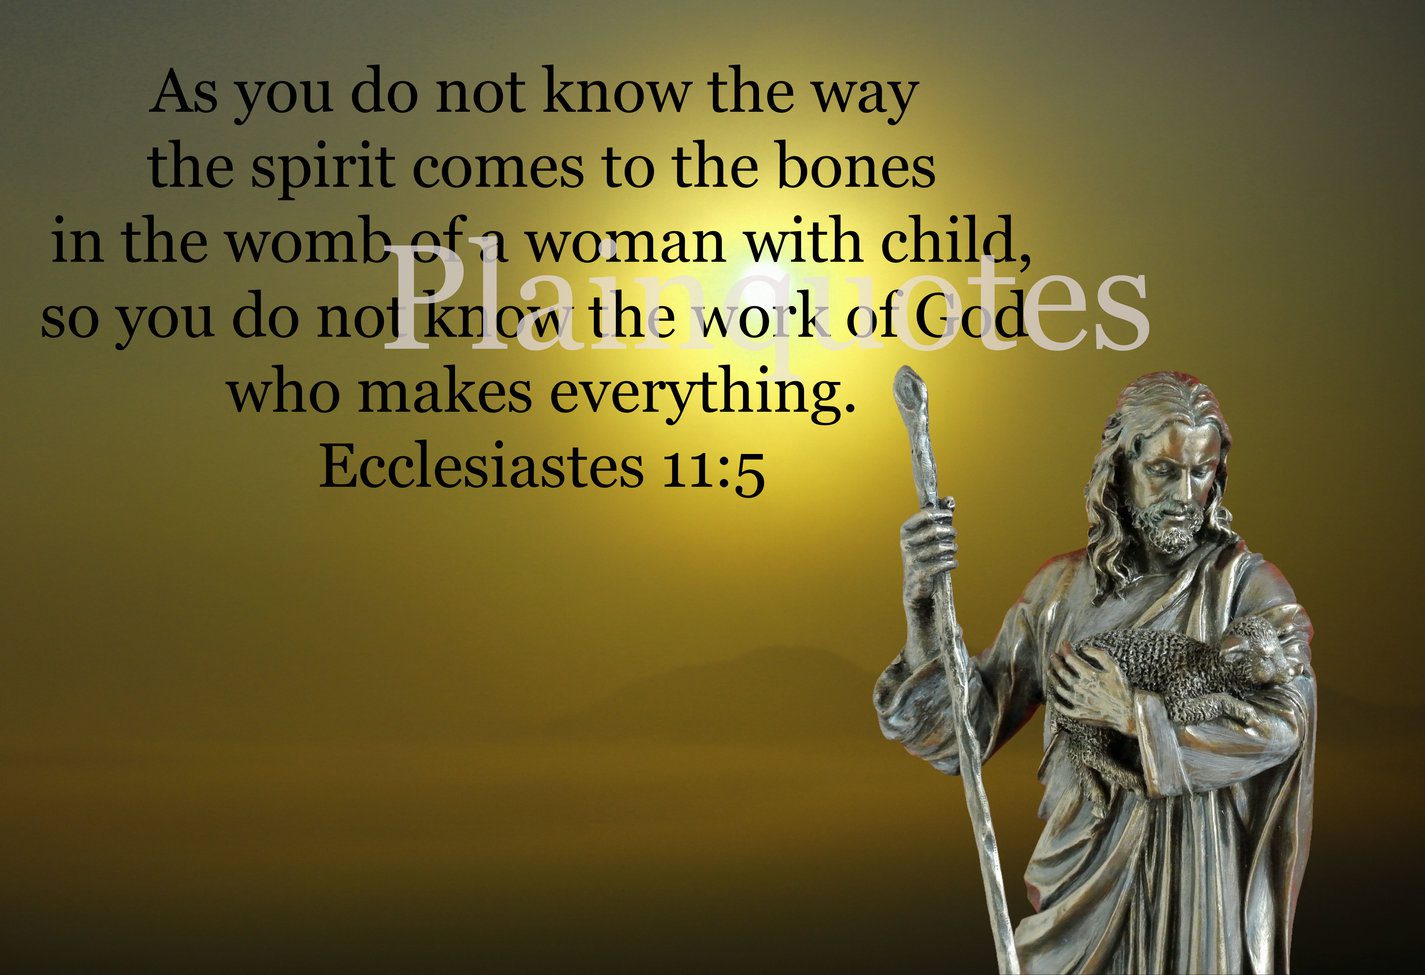 Ecclesiastes11:5 sample image